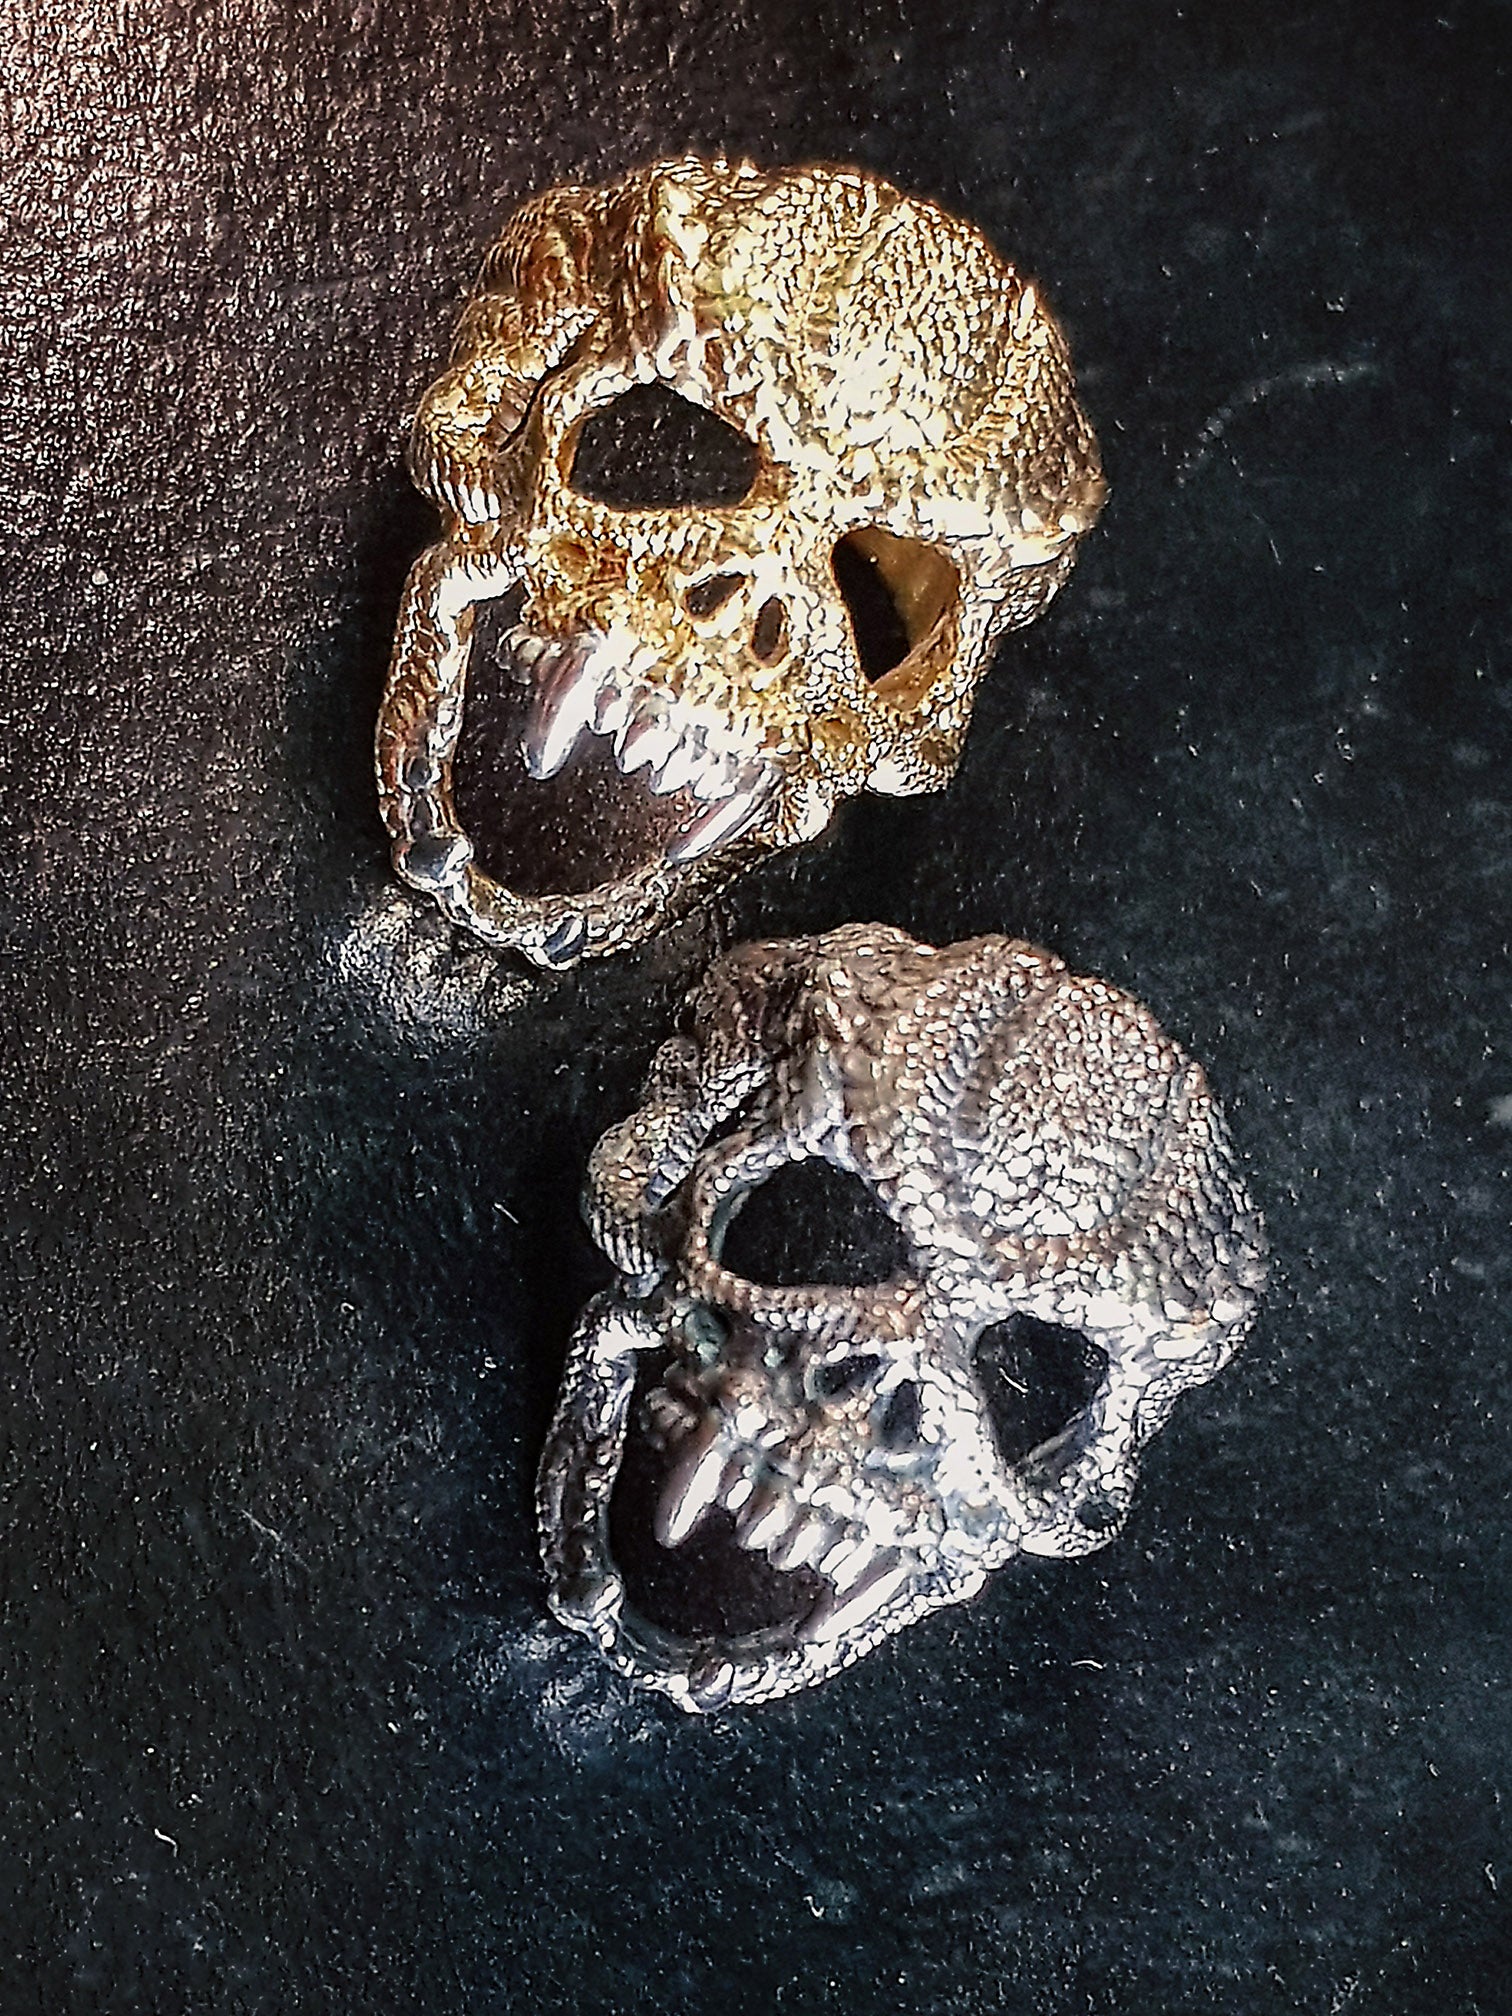 Nāga Skull Ring | 925 Silver